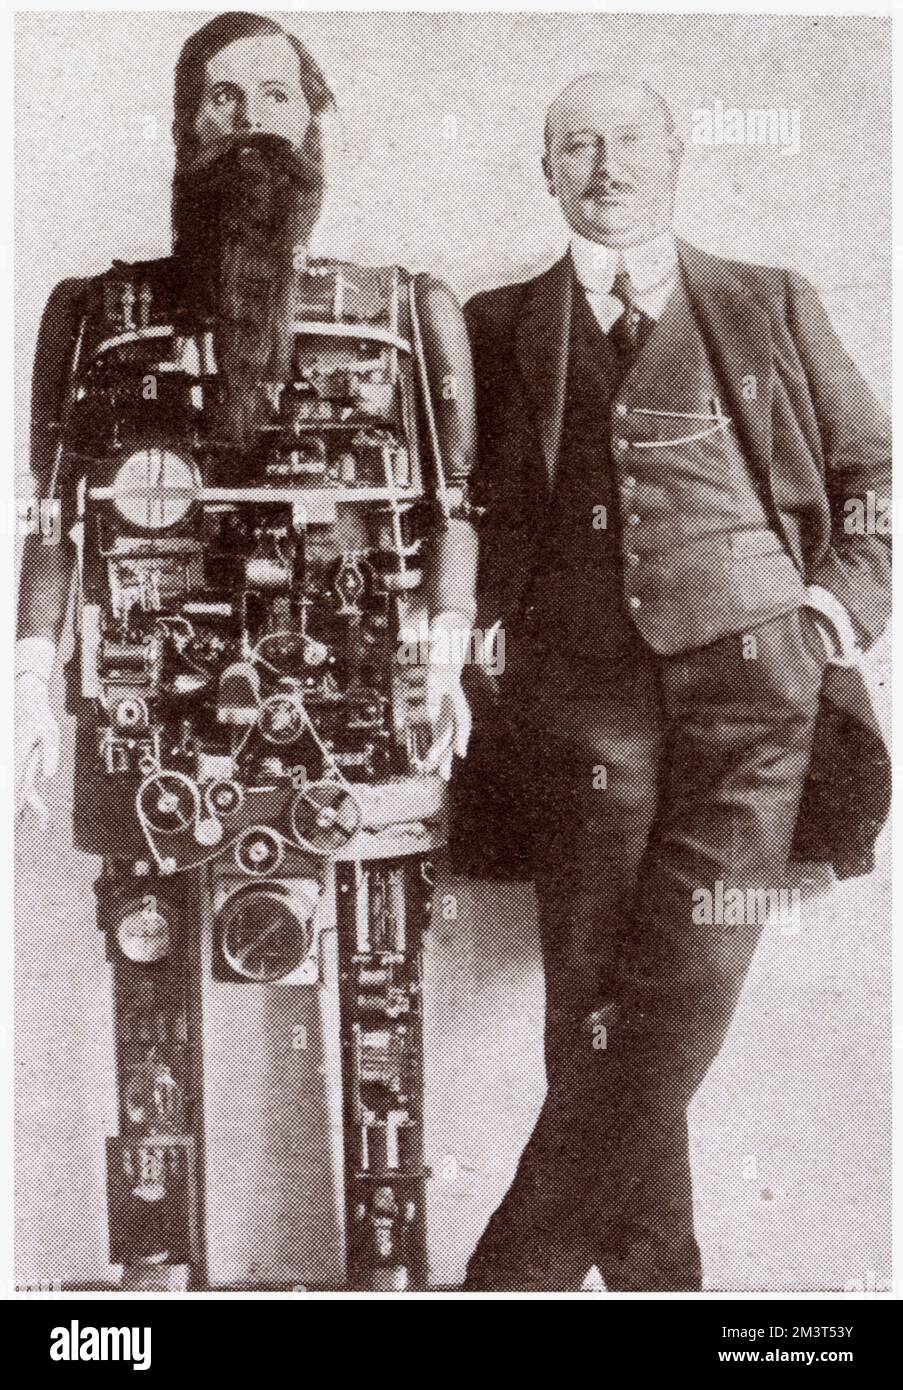 Berliner Erfinder Herr Widmann mit seinem mechanischen Uhrwerk, der die menschlichen Bewegungen imitiert, konnte singen, lachen und pfeifen. Stockfoto